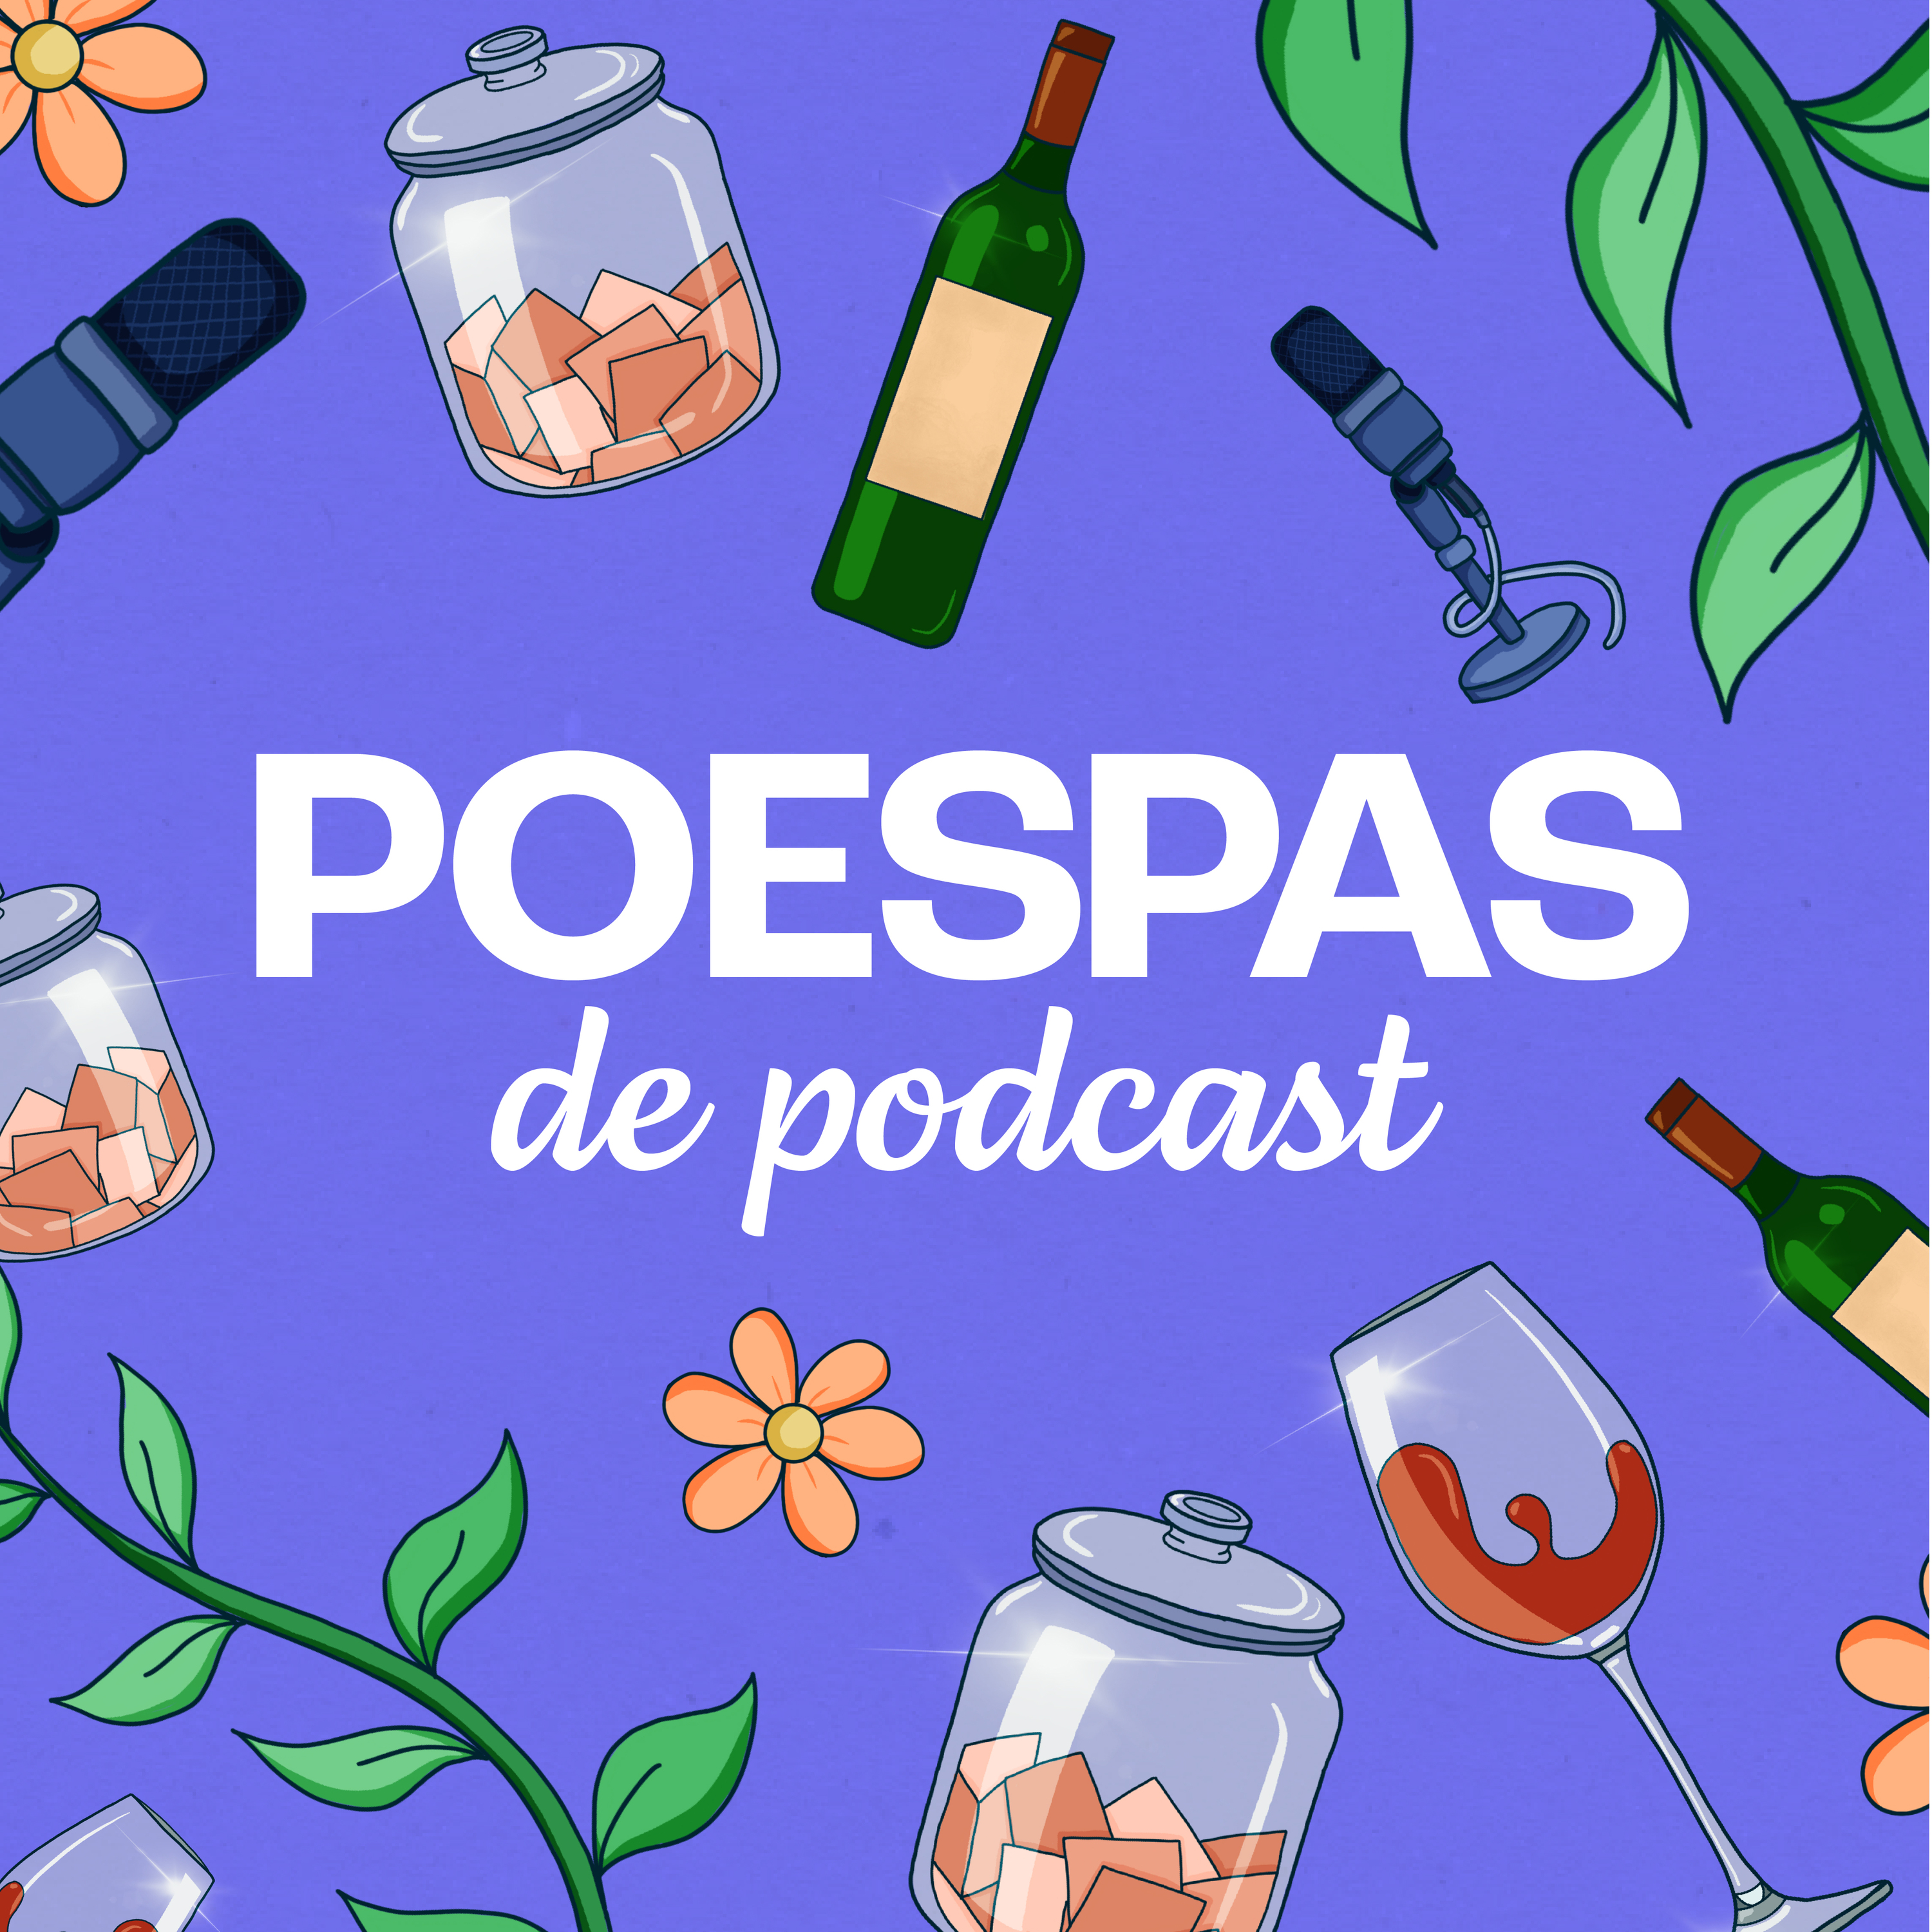 Poespas de Podcast logo